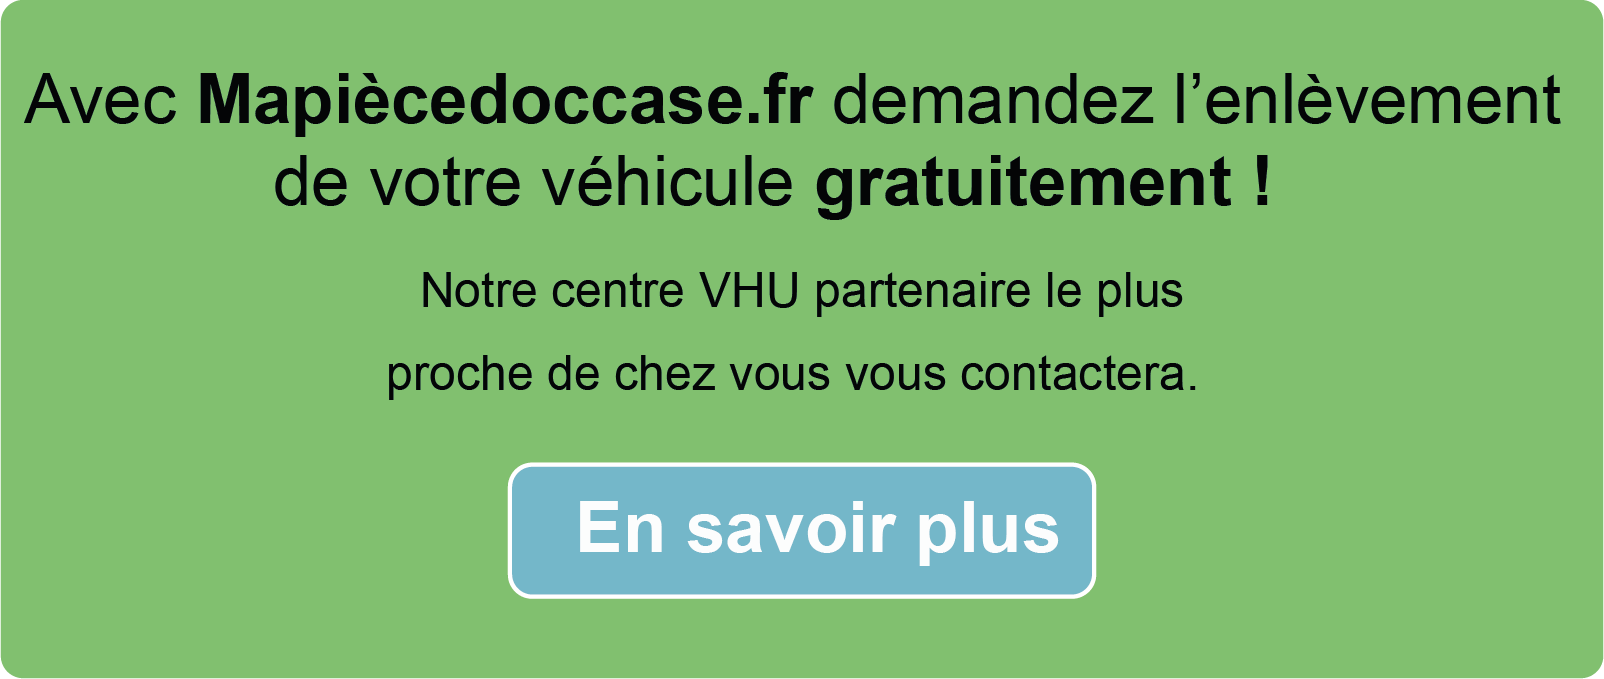 Demandez l'enlèvement de votre véhicule hors d'usage sur Mapiècedoccase.fr